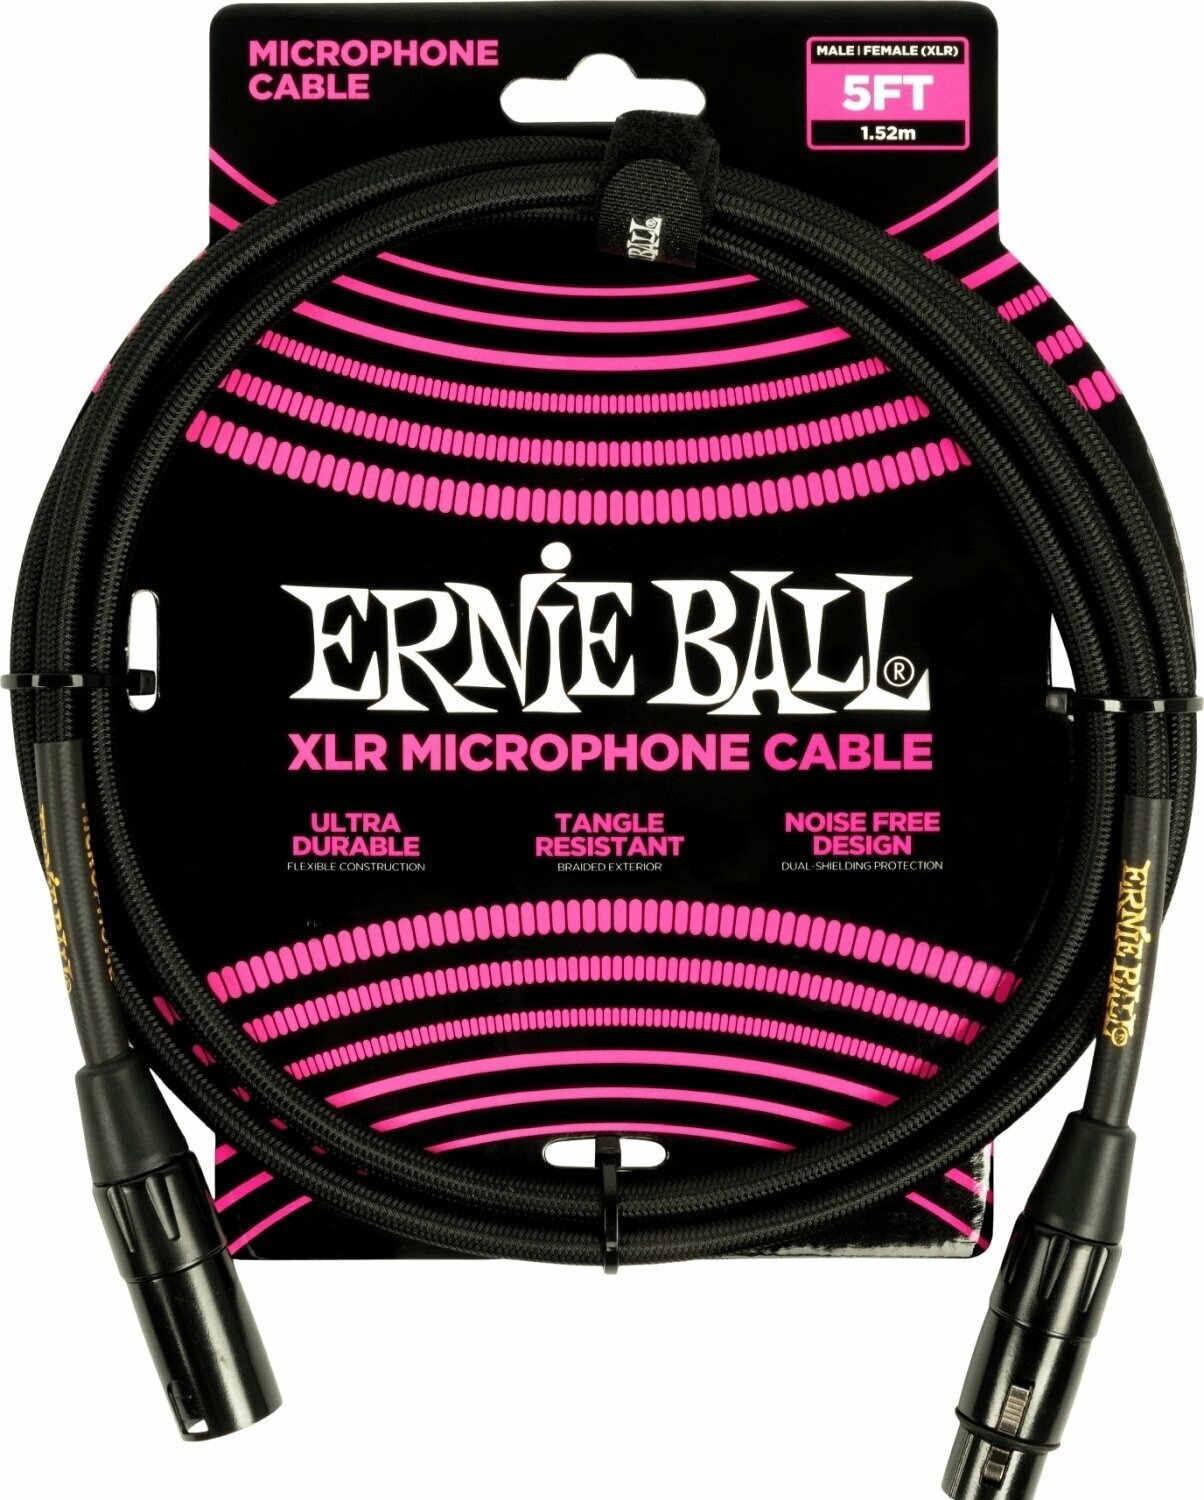 Cable de micrófono Ernie Ball 6390 Negro 1,5 m Cable de micrófono